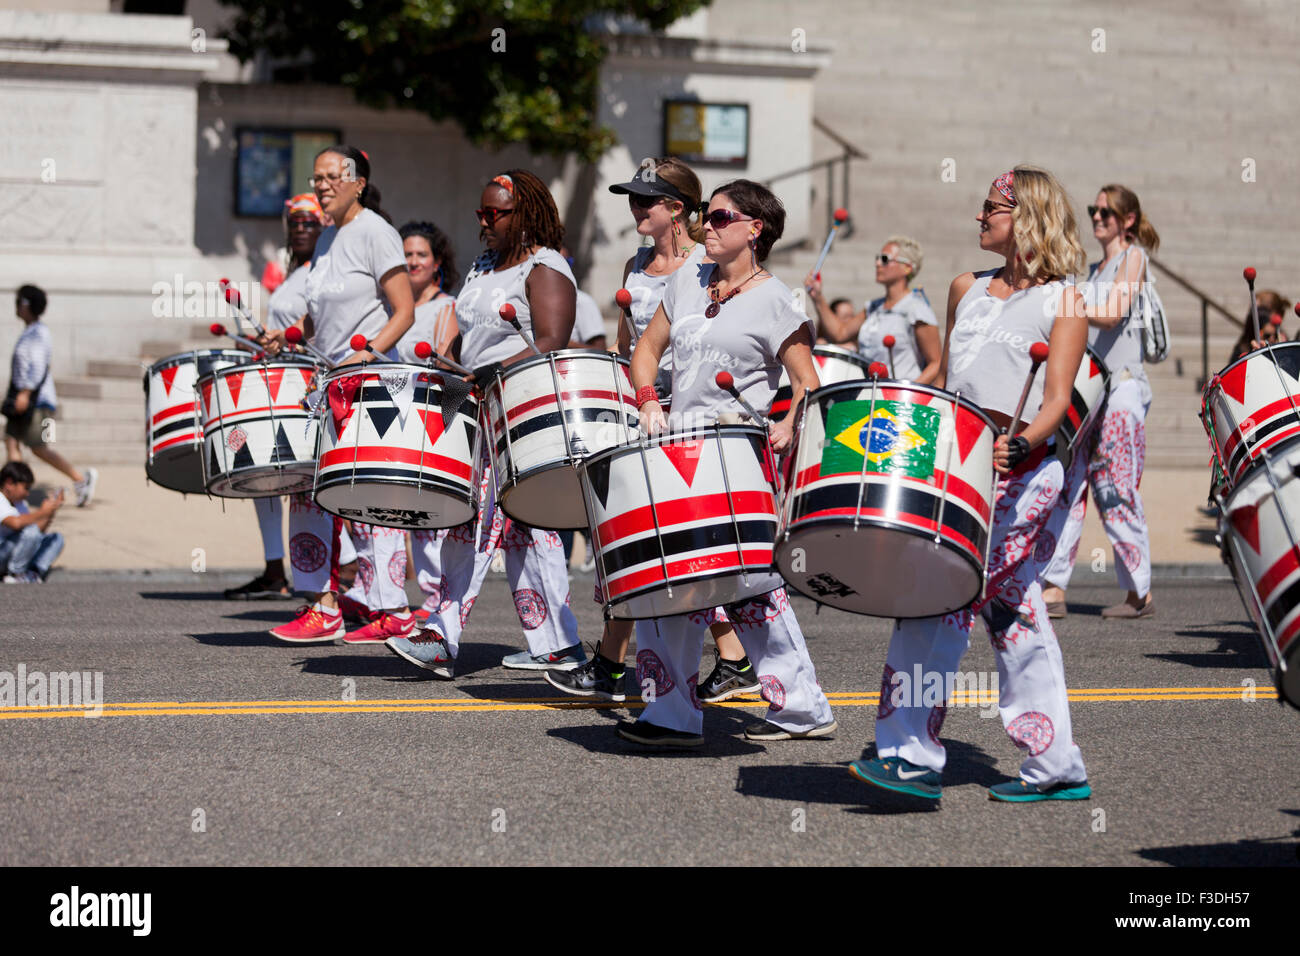 Batalá drummers at parade - Washington, DC USA Stock Photo